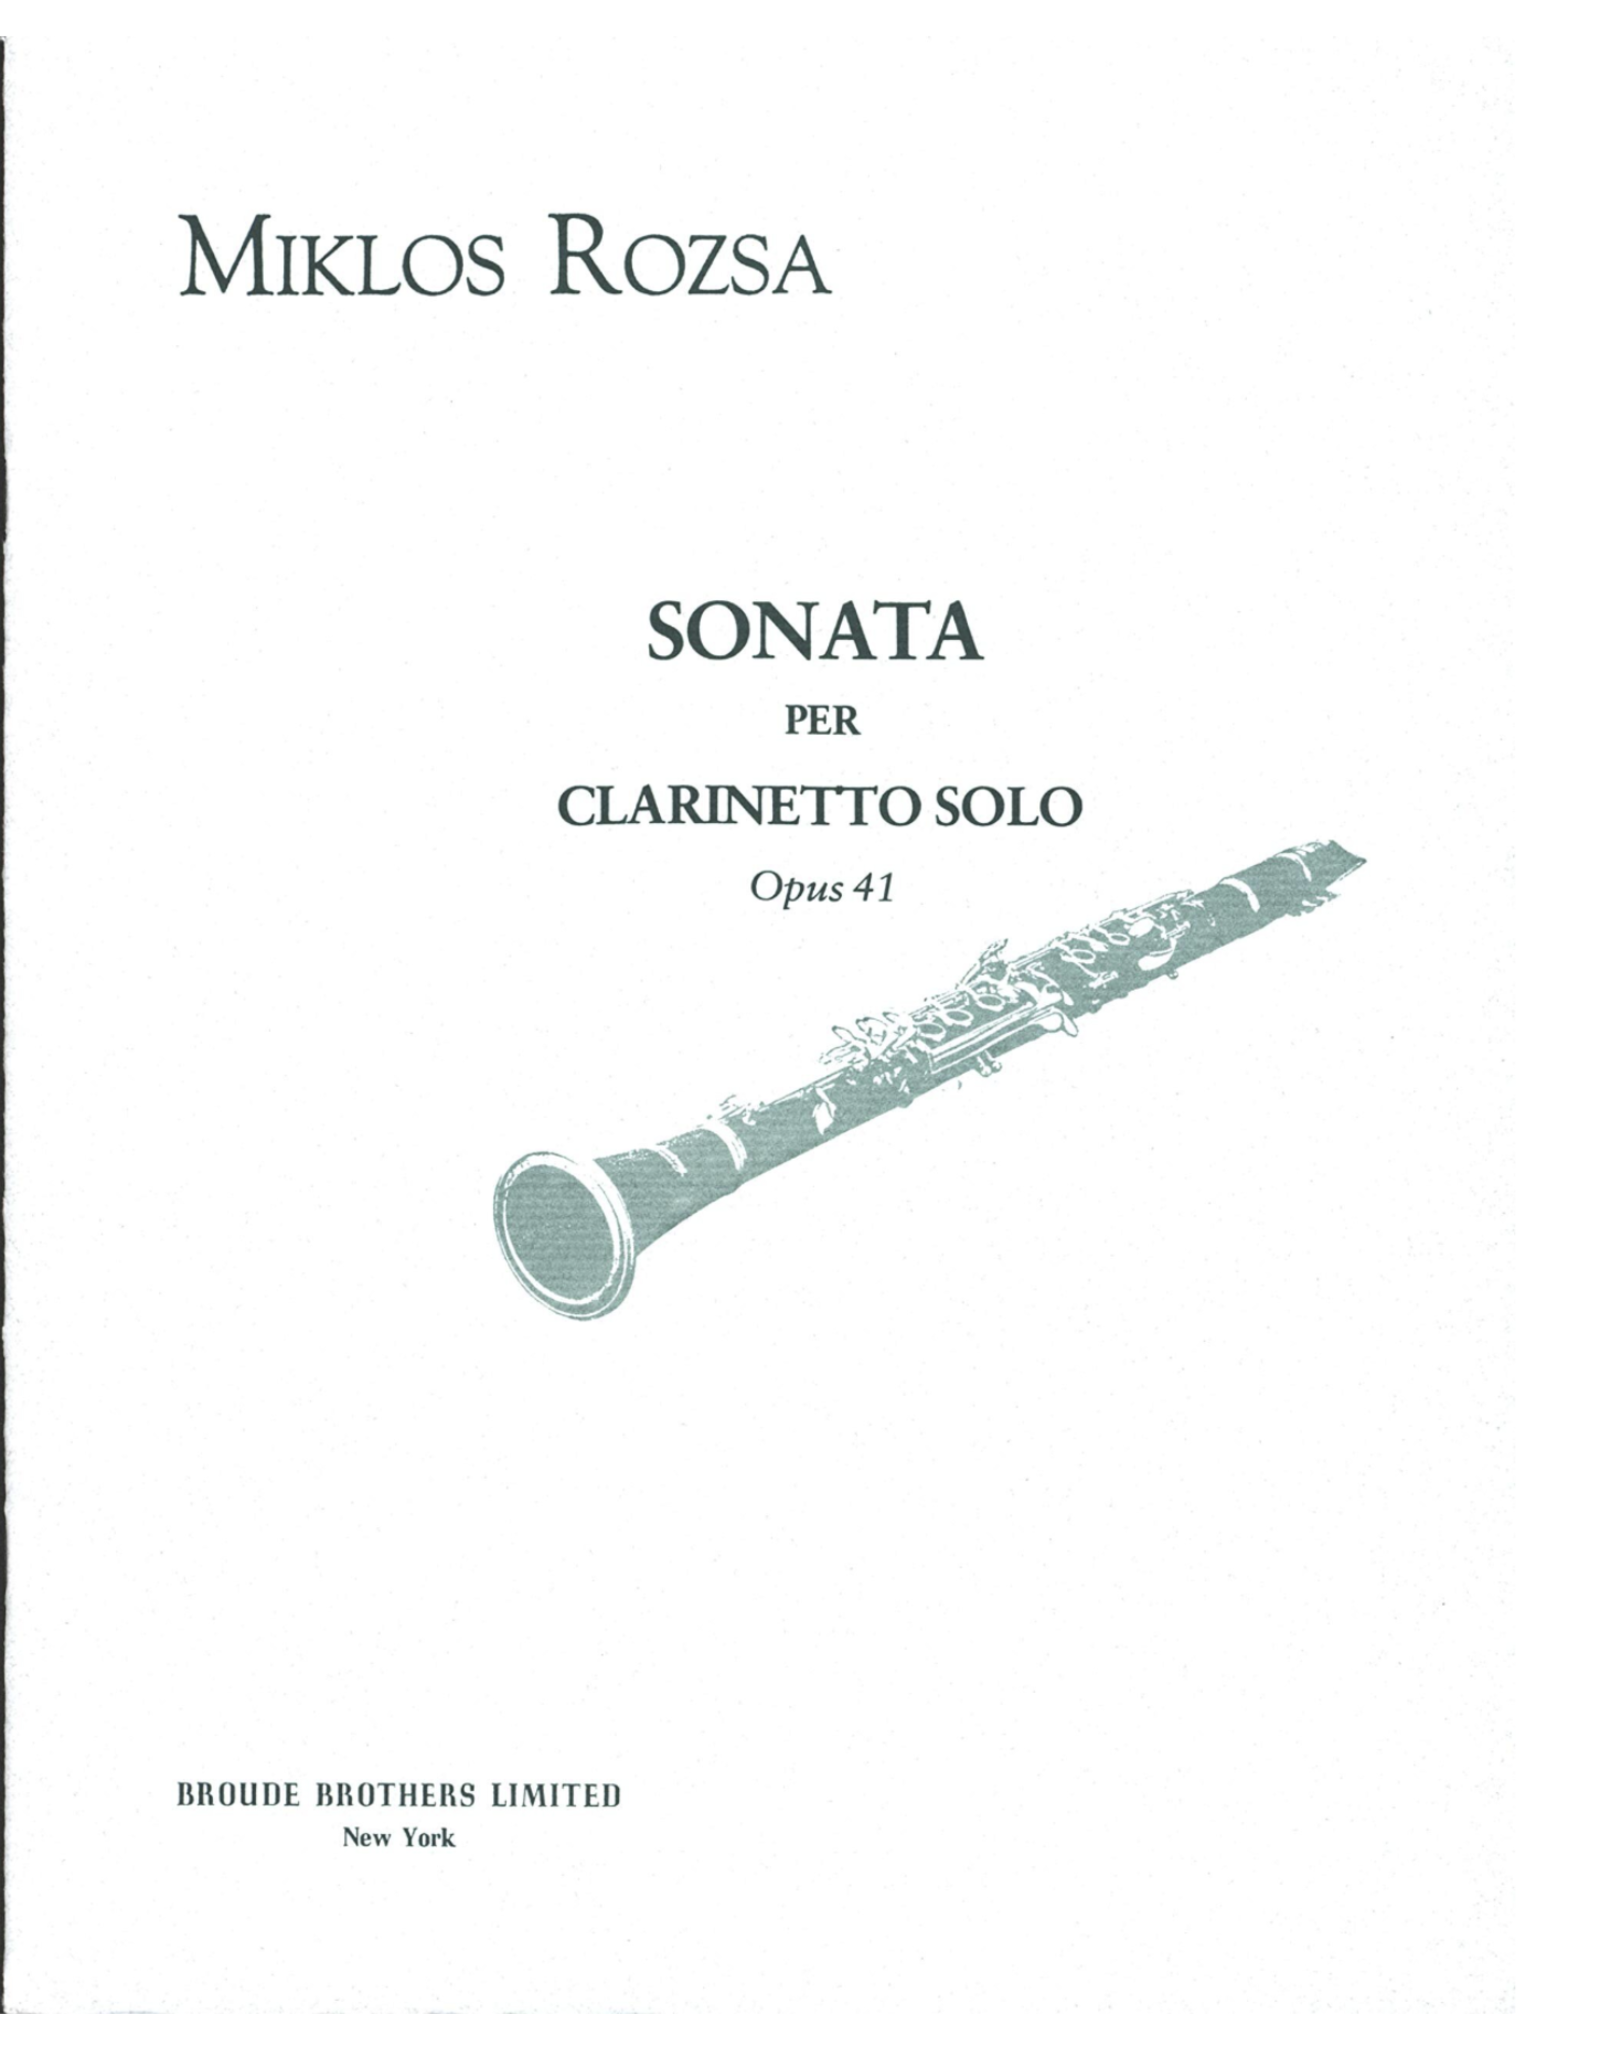 Generic Rozsa - Sonata Per Clarinetto Solo Op. 41